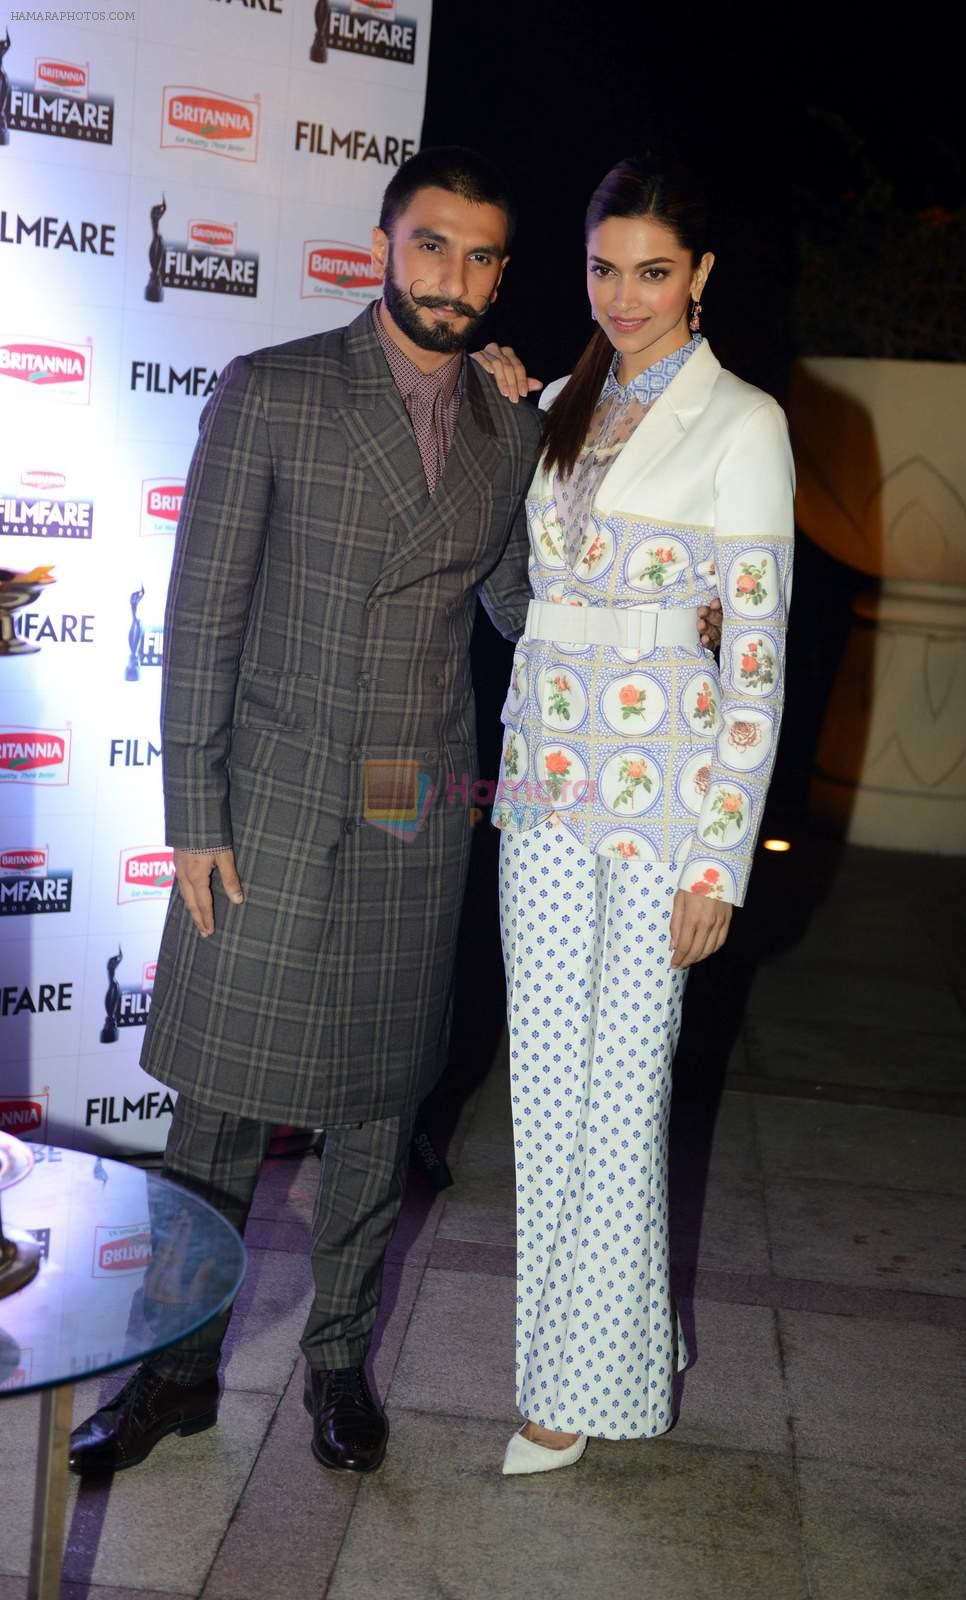 Deepika Padukone and Ranveer Singh at Filmfare Awards press meet on 12th Dec 2015